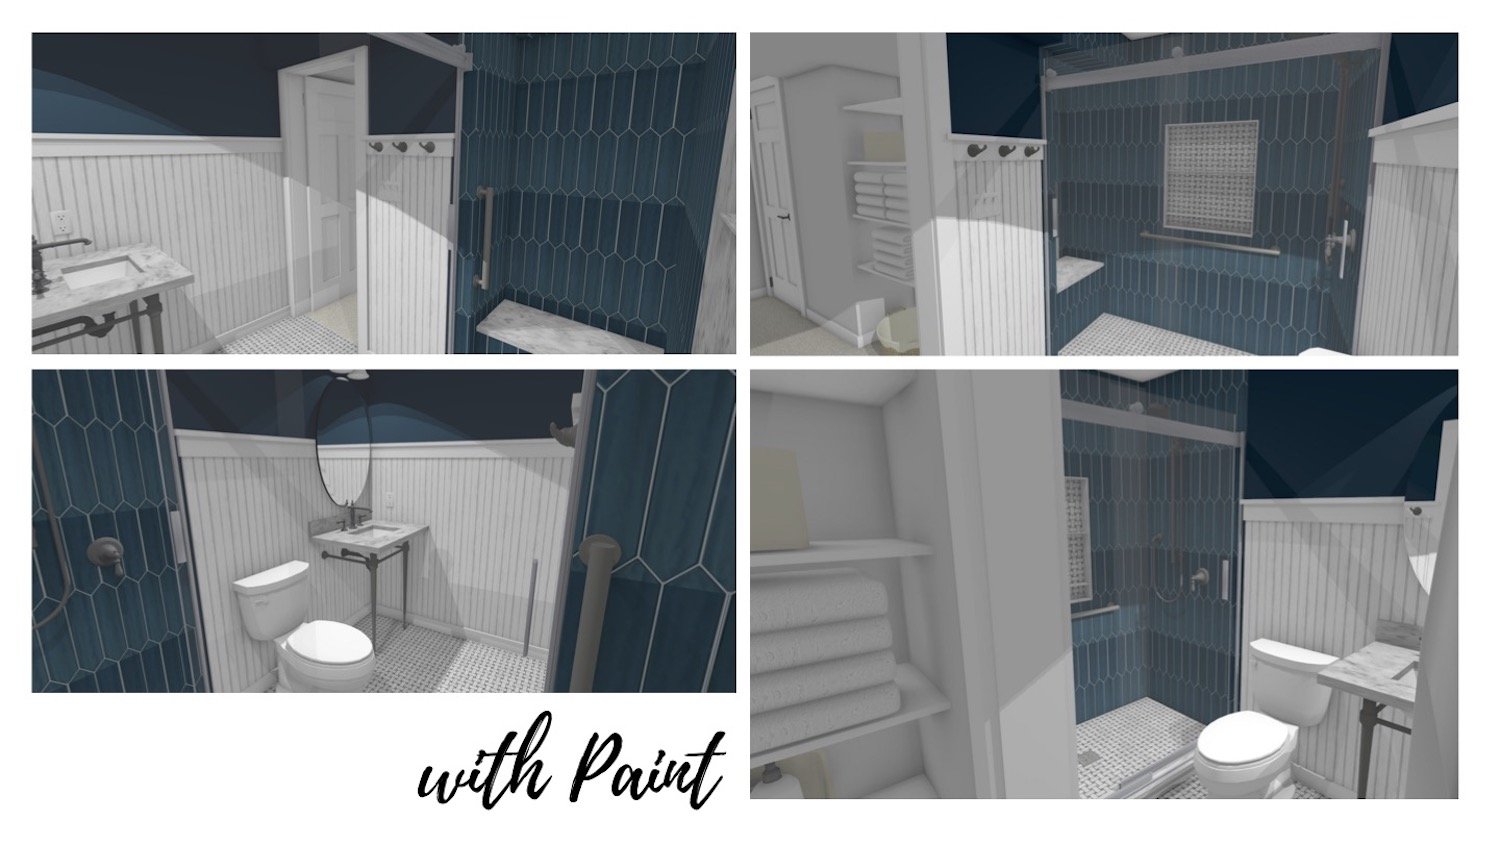 Basement Bath renderings with painted walls.jpg